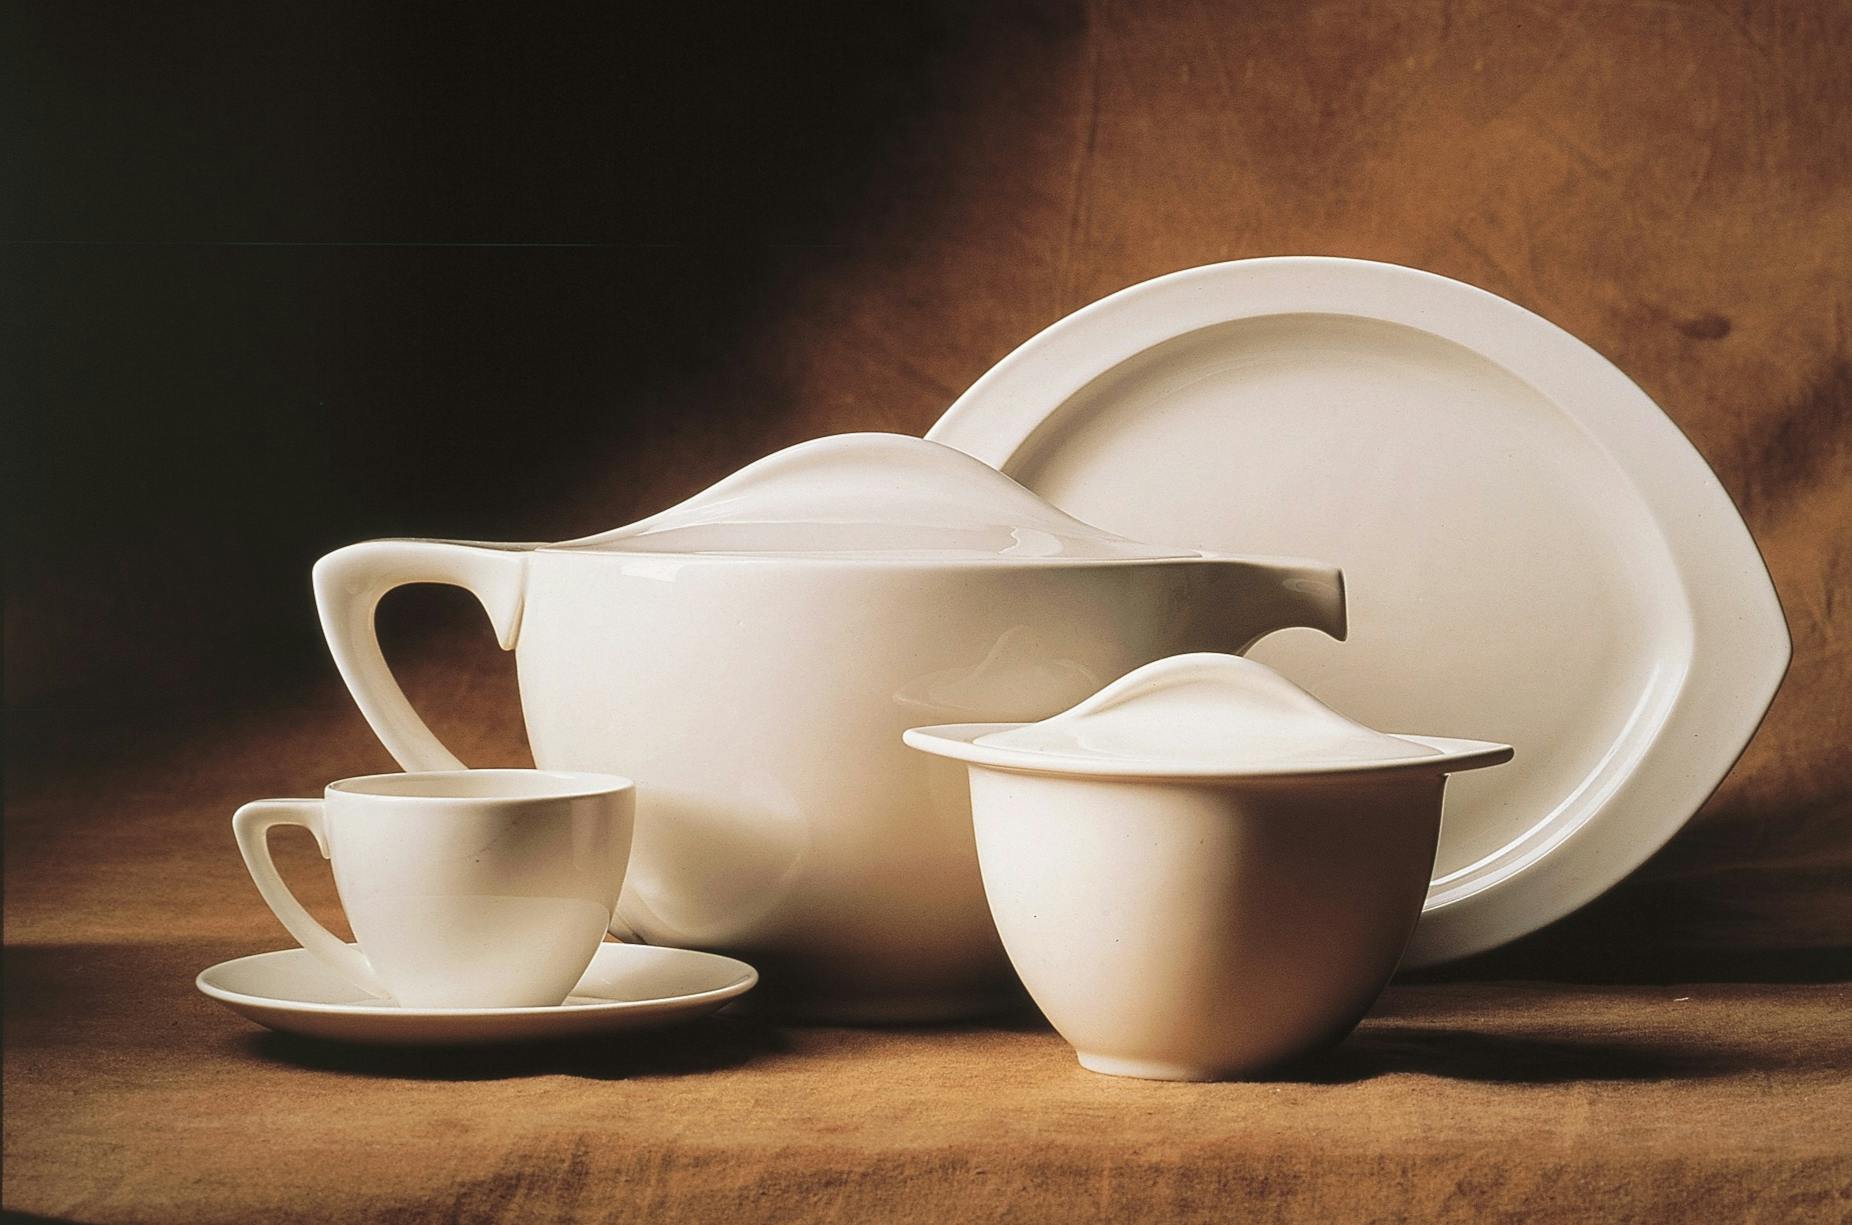 Piatto, tazza, cuppiera e recipiente con coperchio in porcellana bianca